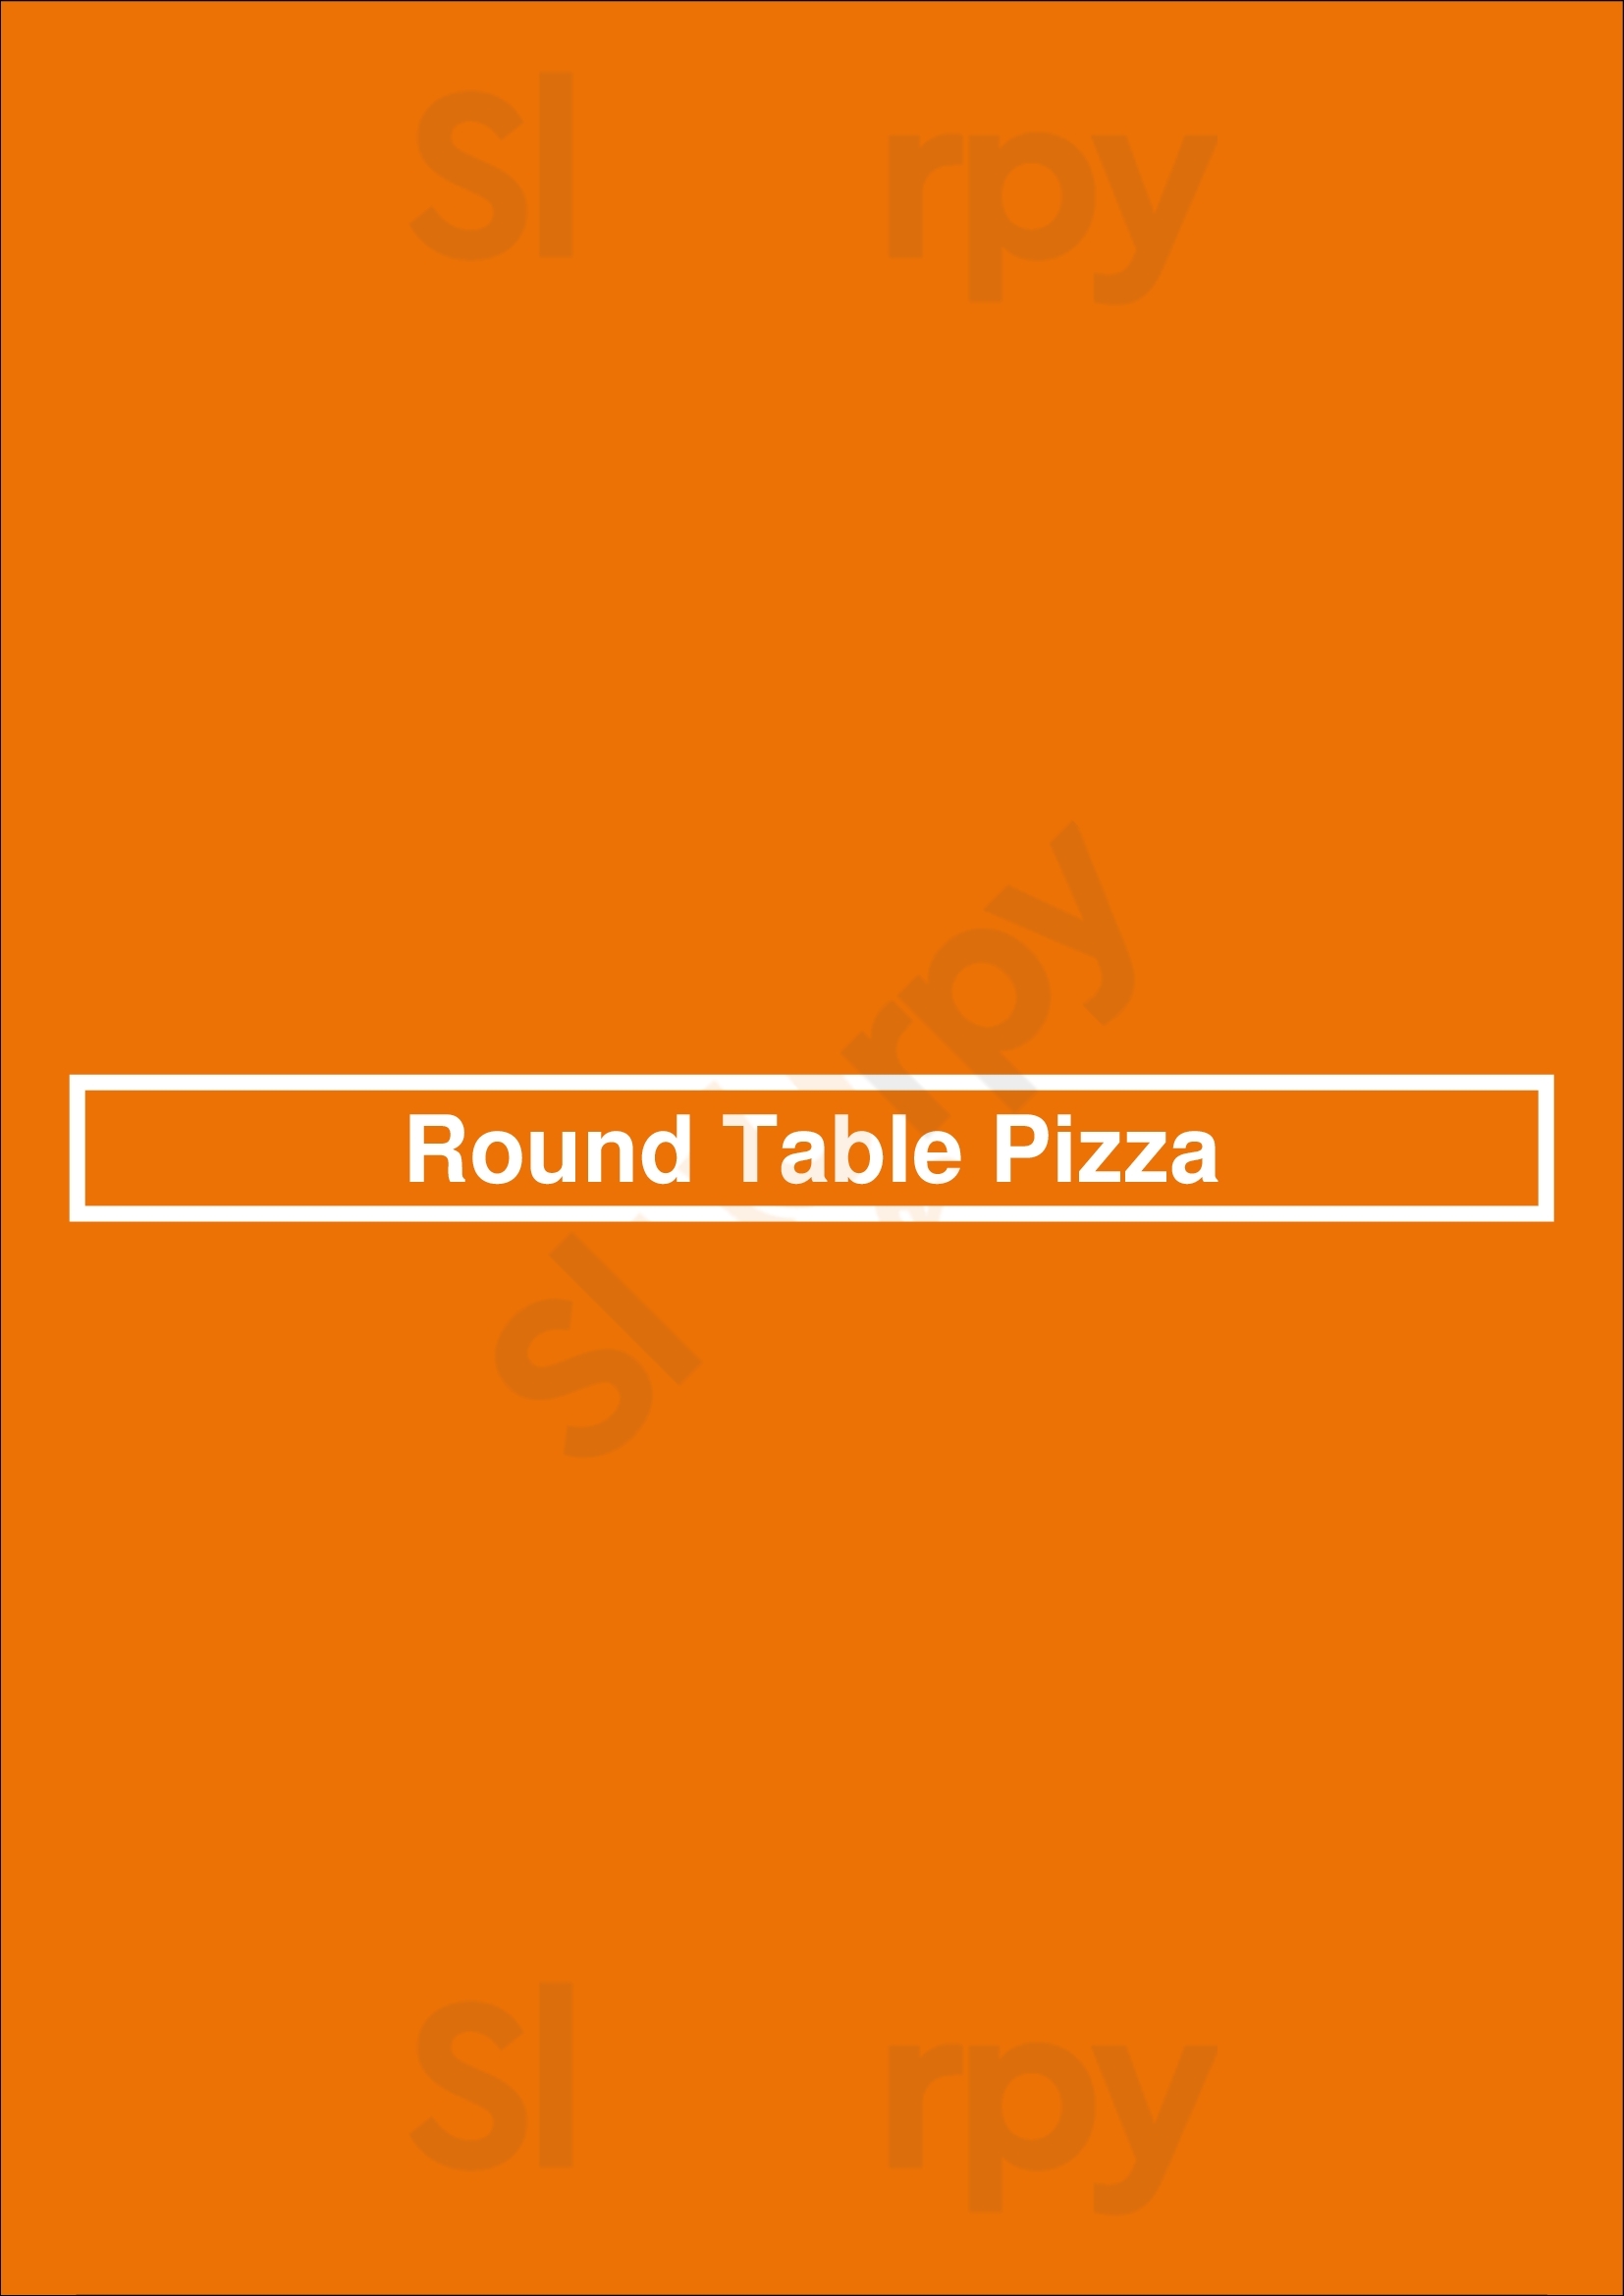 Round Table Pizza Fresno Menu - 1